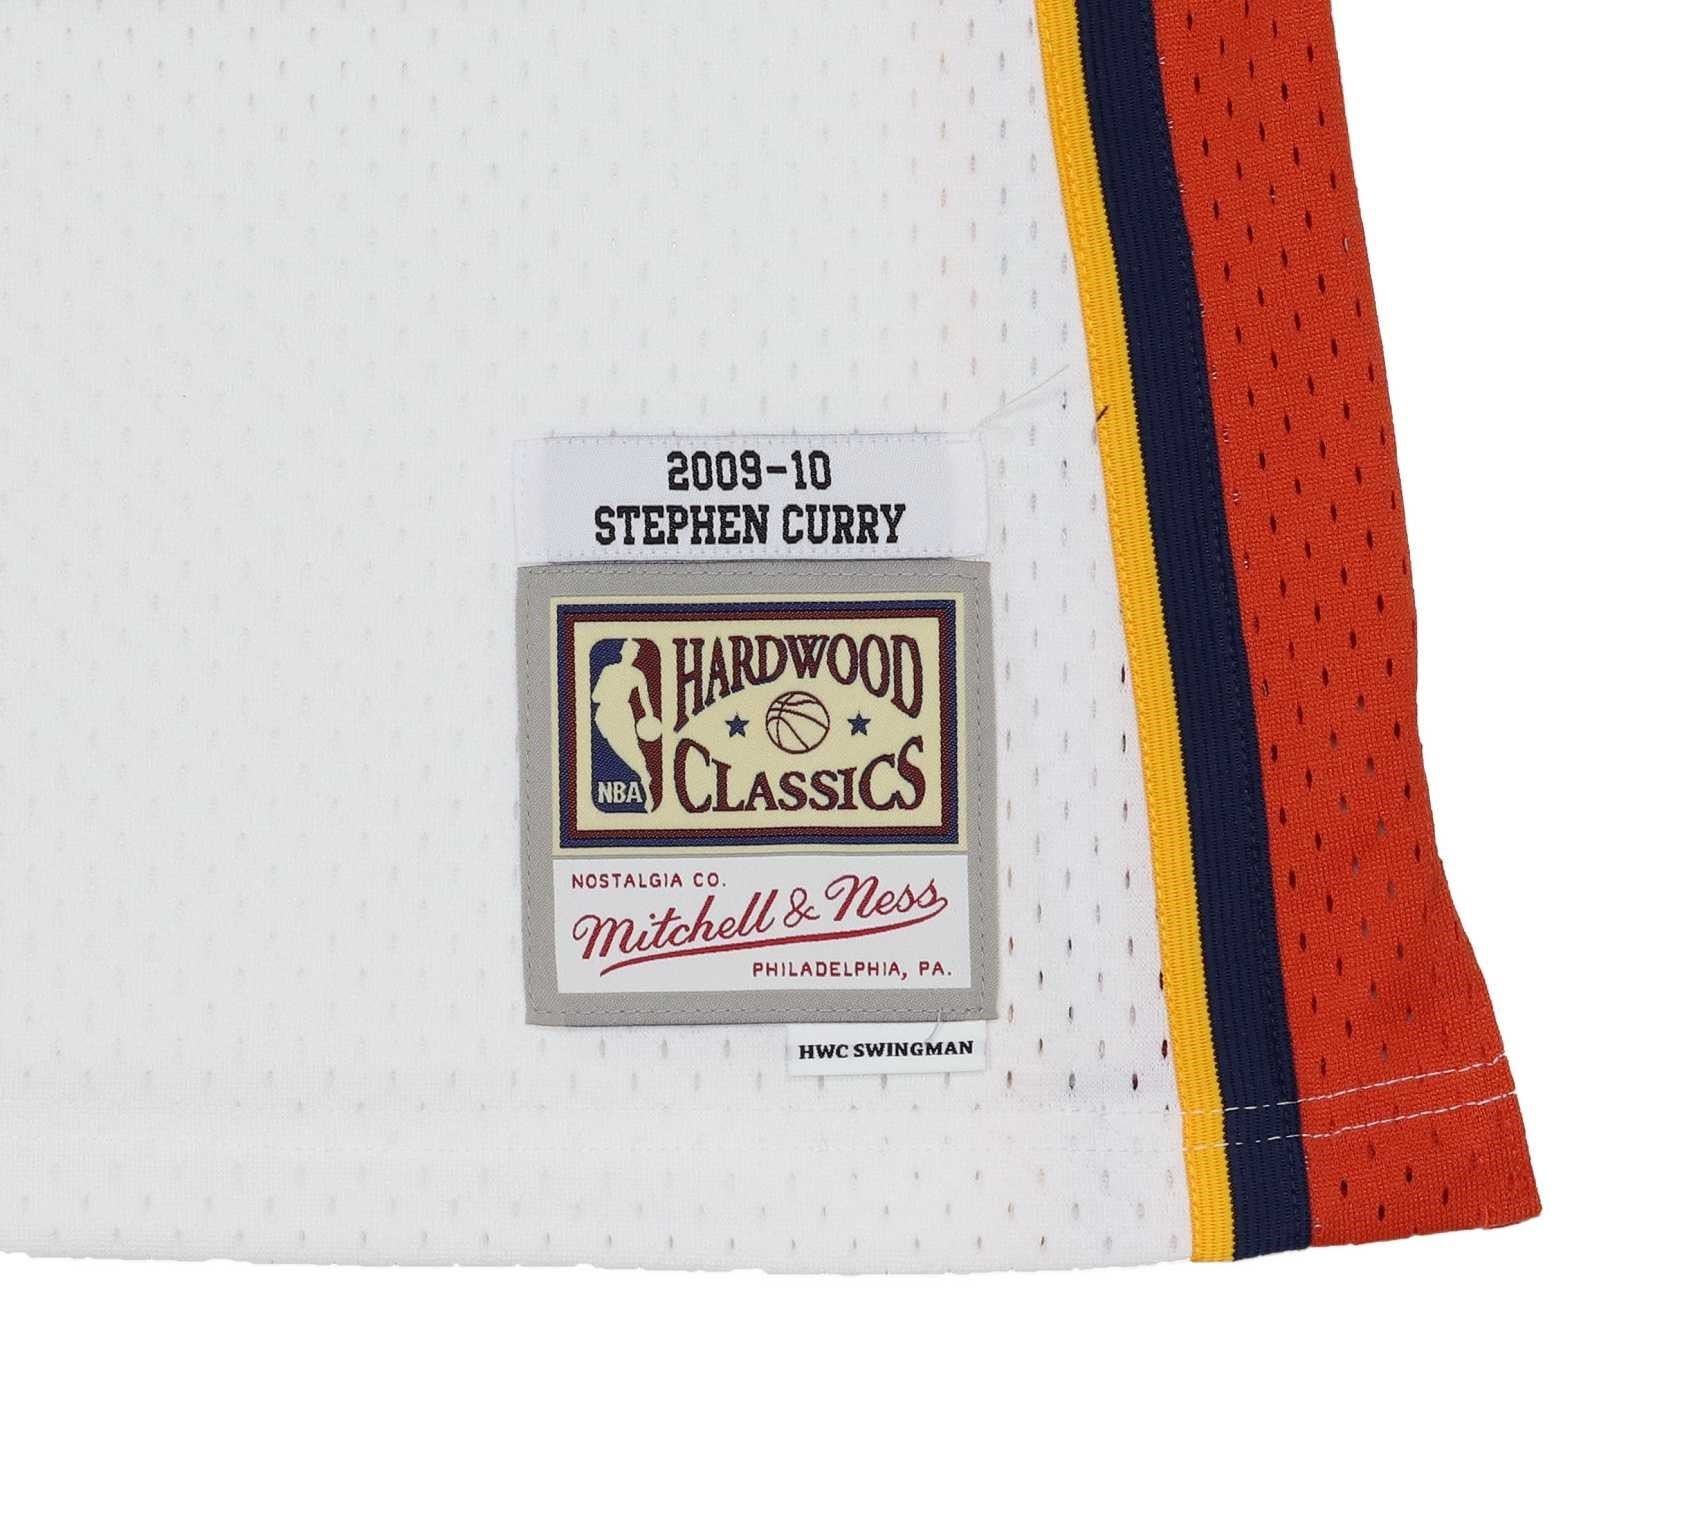 Stephen Curry #30 Golden State Warriors NBA Kids Swingman Home Jersey Mitchell & Ness